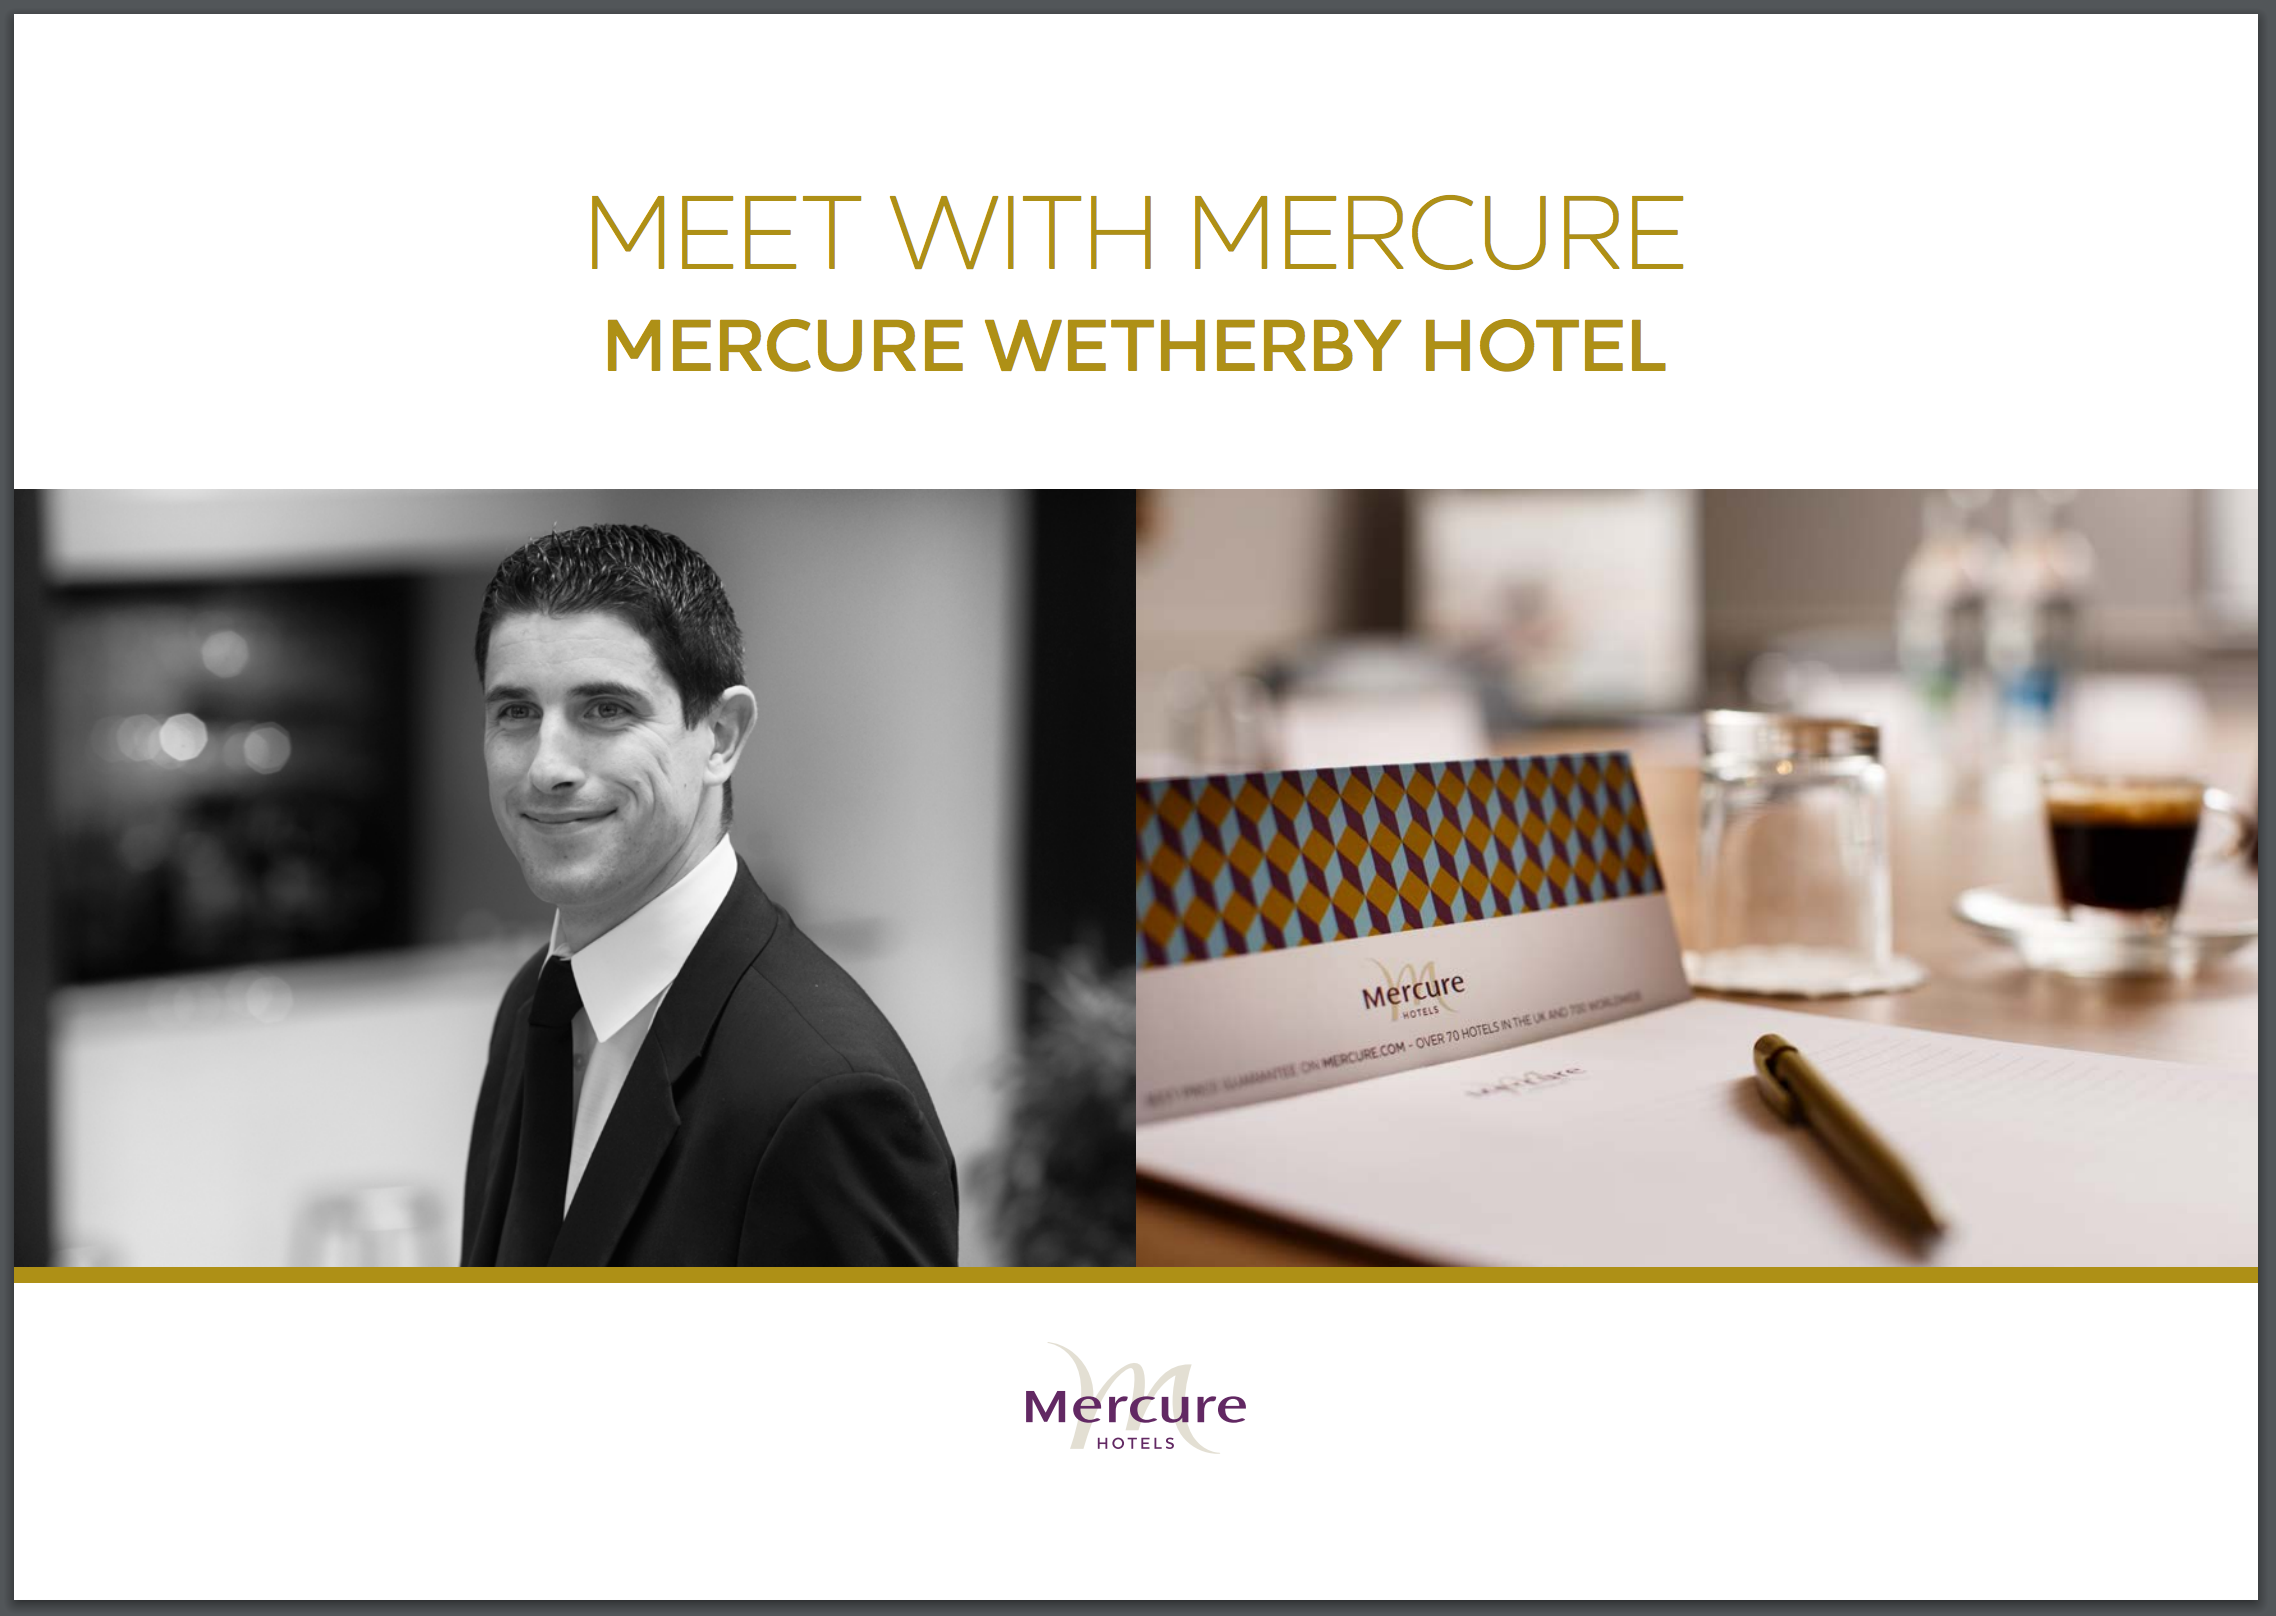 Mercure Wetherby Hotel – Meetings Brochure Cover